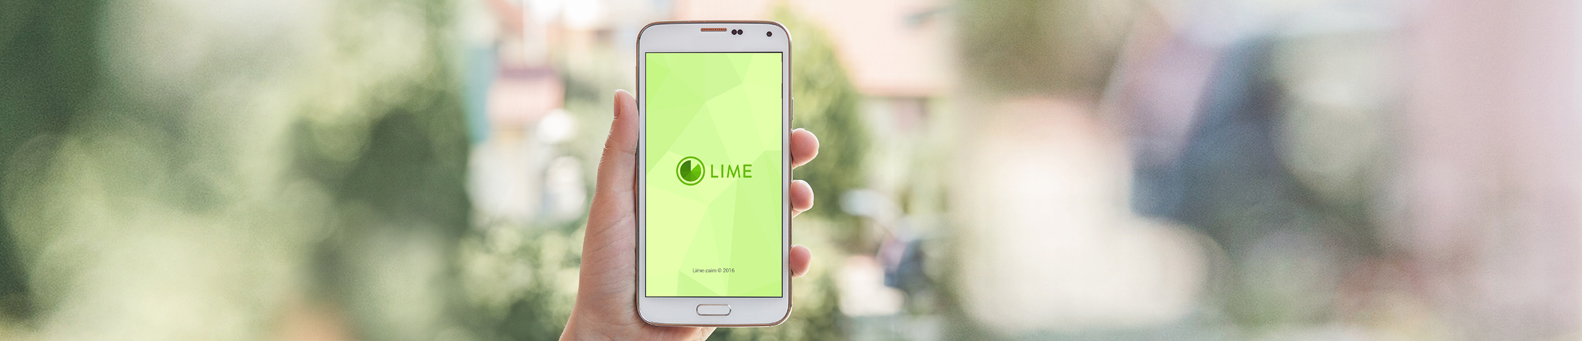 Ваш выход: мобильное приложение LIME